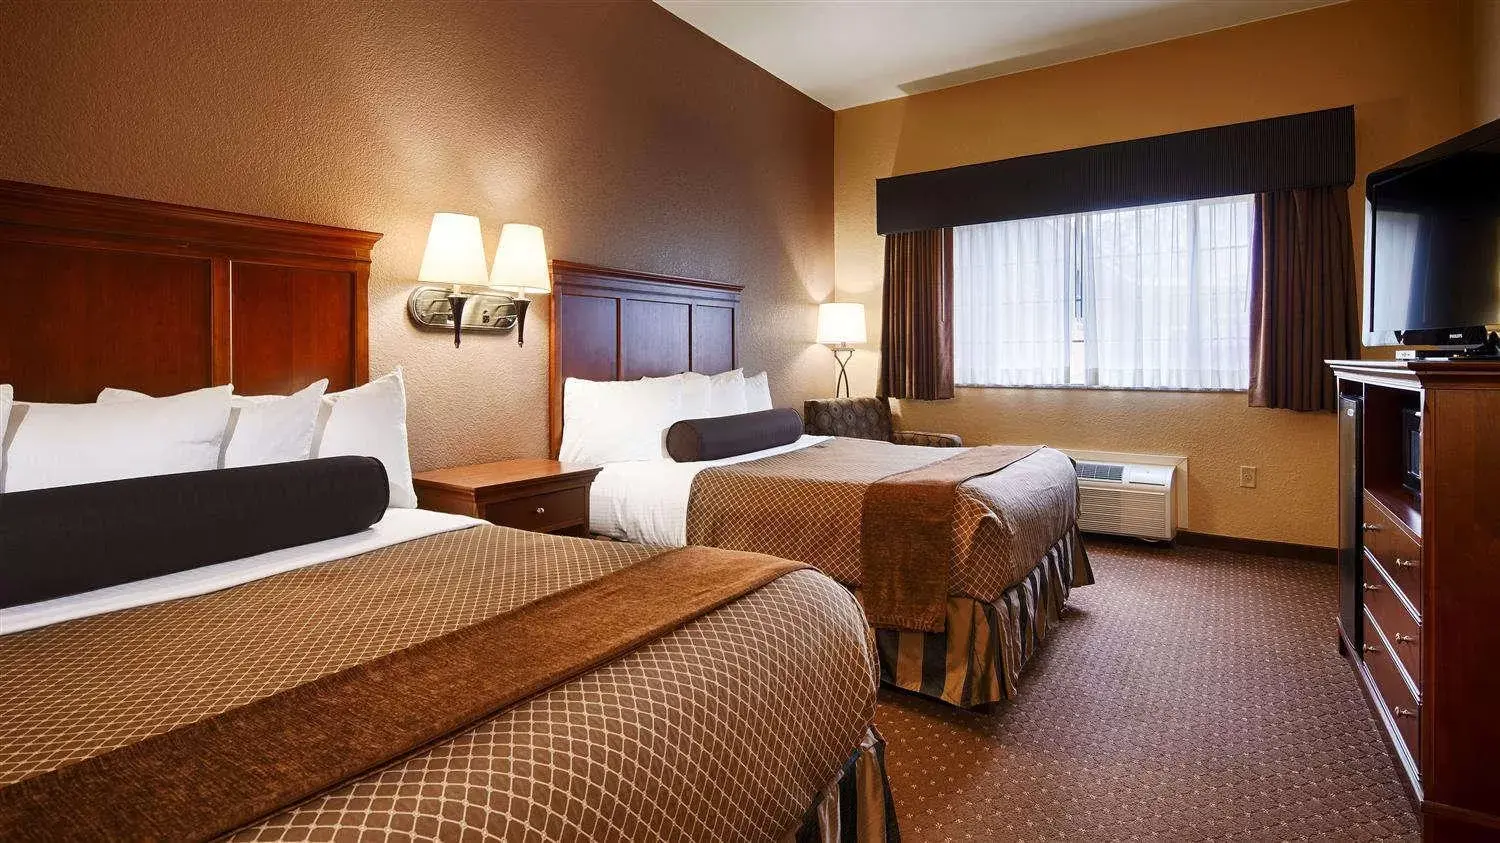 Bed, Room Photo in Best Western Plus Shamrock Inn & Suites